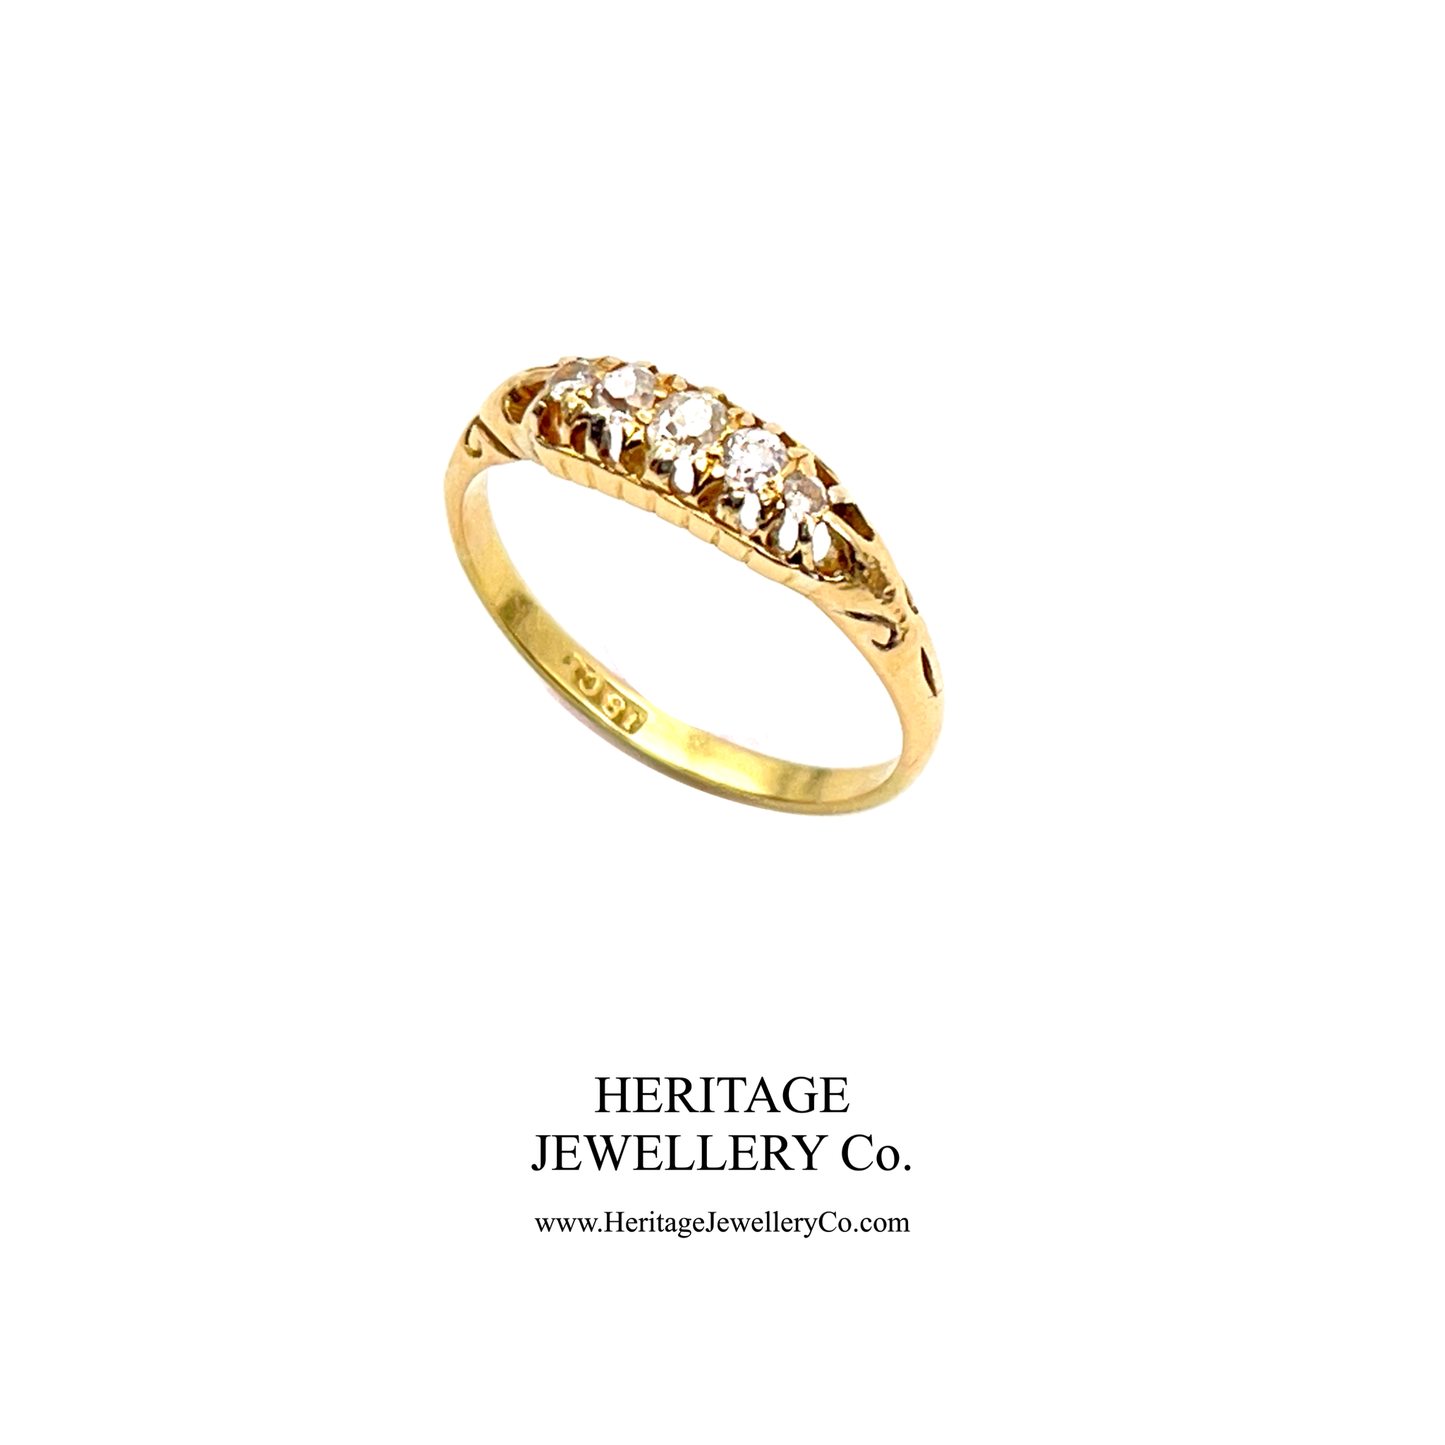 Antique Edwardian Gold 5-Stone Diamond Ring (c. 1890-1900)